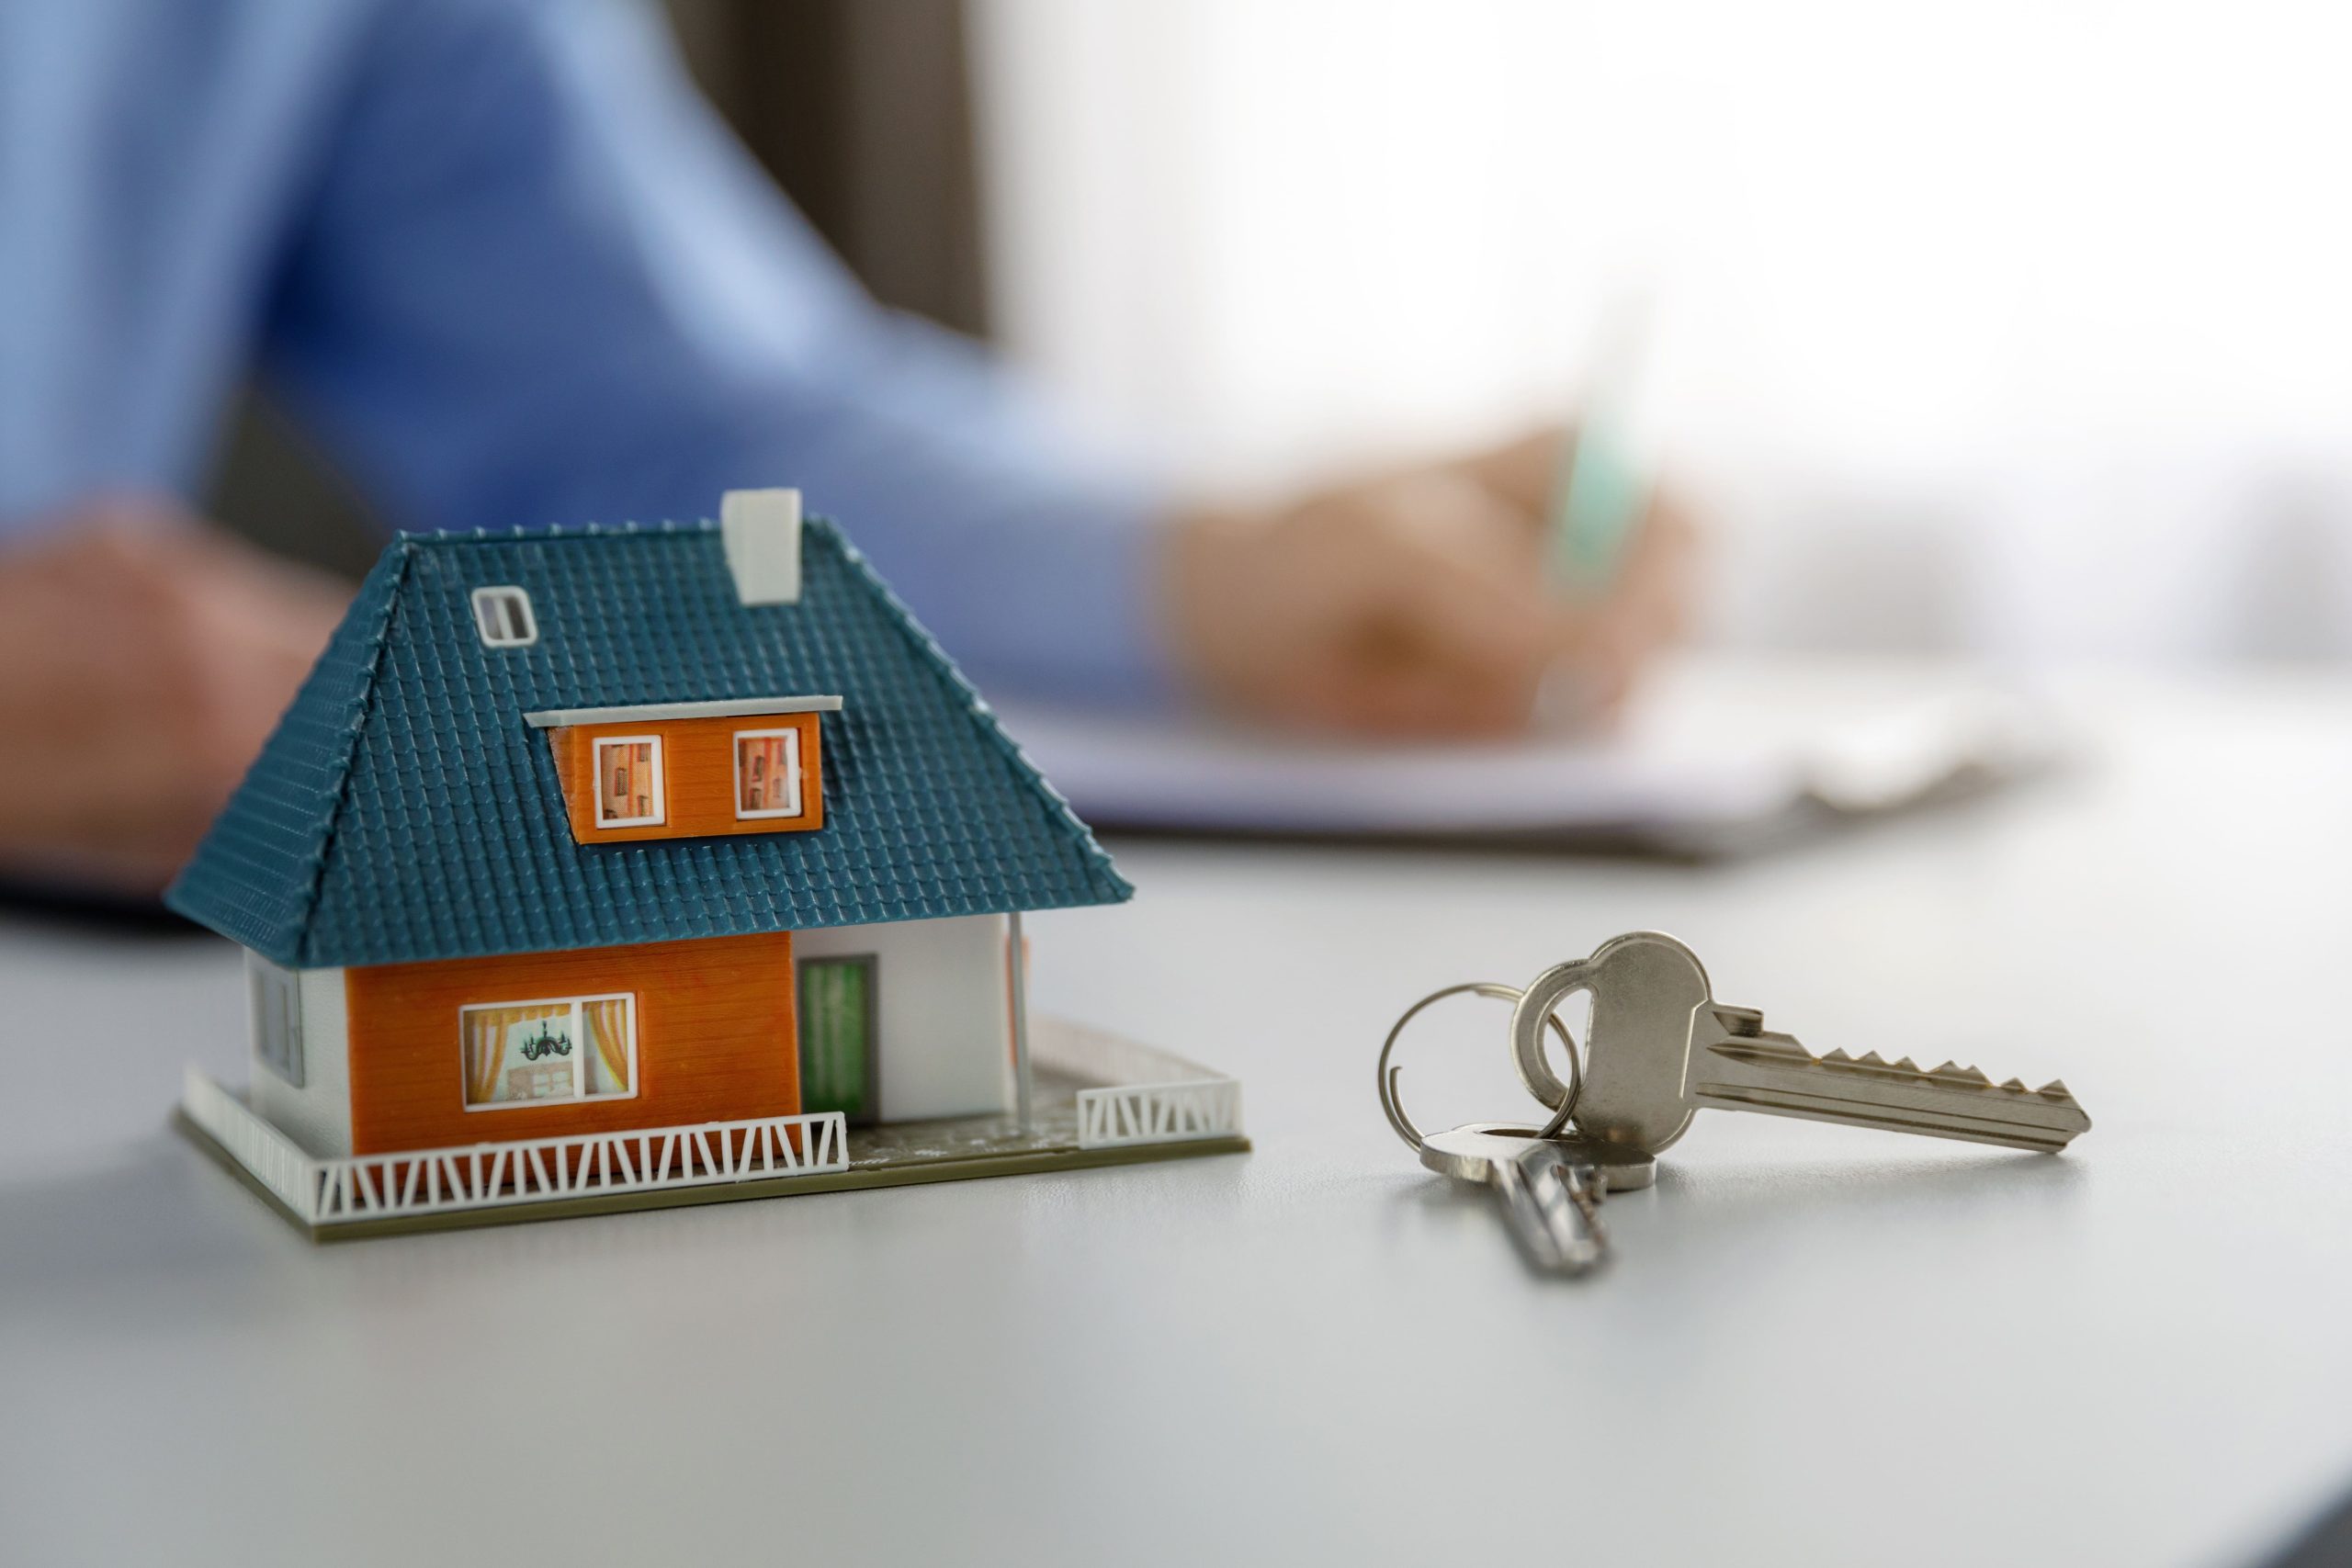 O que é o Minha Casa, Minha Vida 2023? | Foto de uma casa pequena e chaves, com uma pessoa ao fundo | Tudo sobre Casa Verde e Amarela | Blog Alea